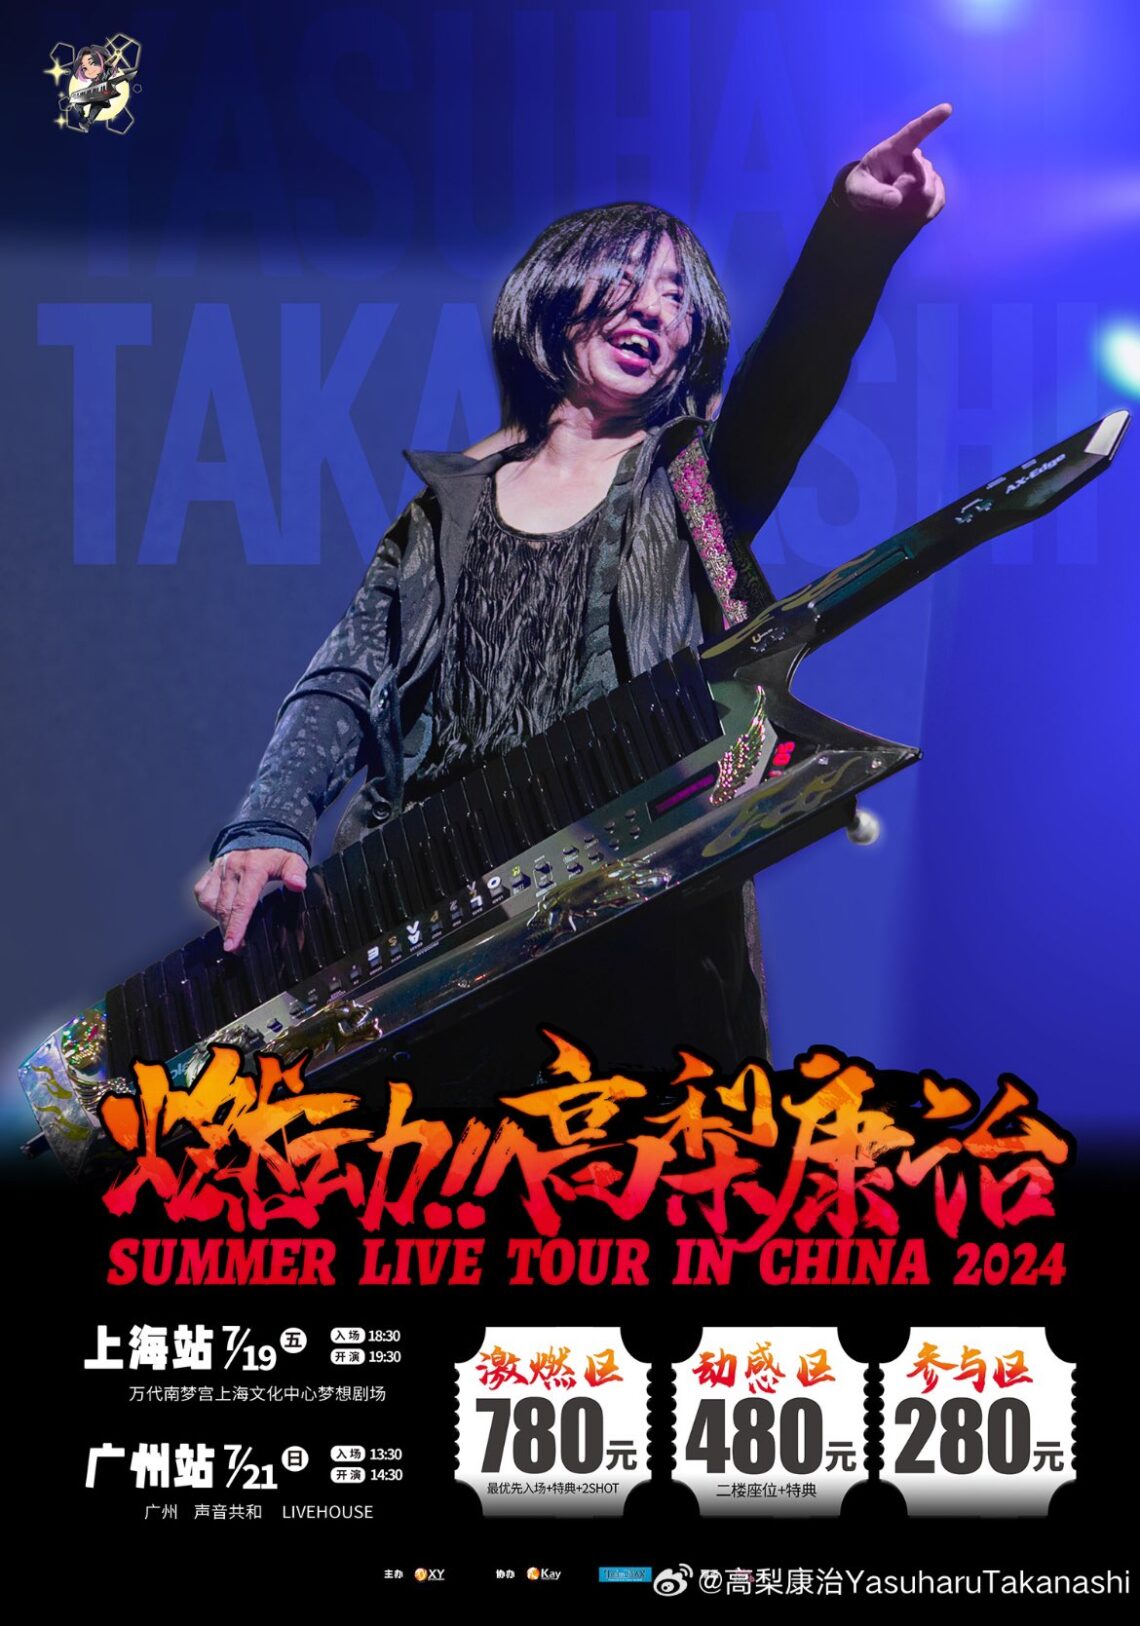 イベント『燃动!!高梨康治SUMMER LIVE TOUR IN CHINA 2024』